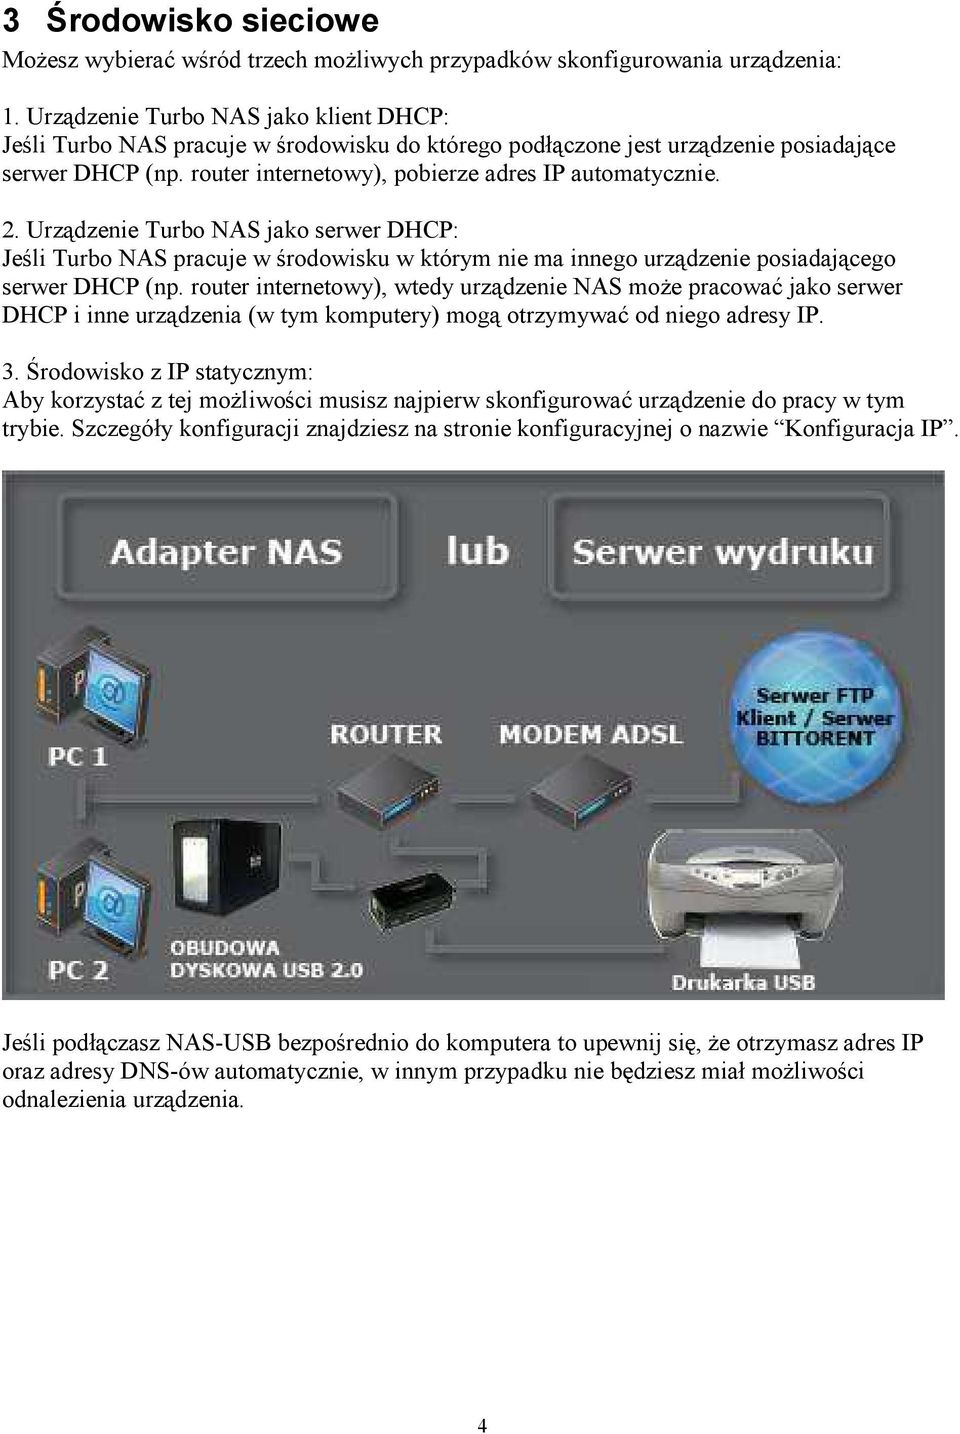 Urządzenie Turbo NAS jako serwer DHCP: Jeśli Turbo NAS pracuje w środowisku w którym nie ma innego urządzenie posiadającego serwer DHCP (np.